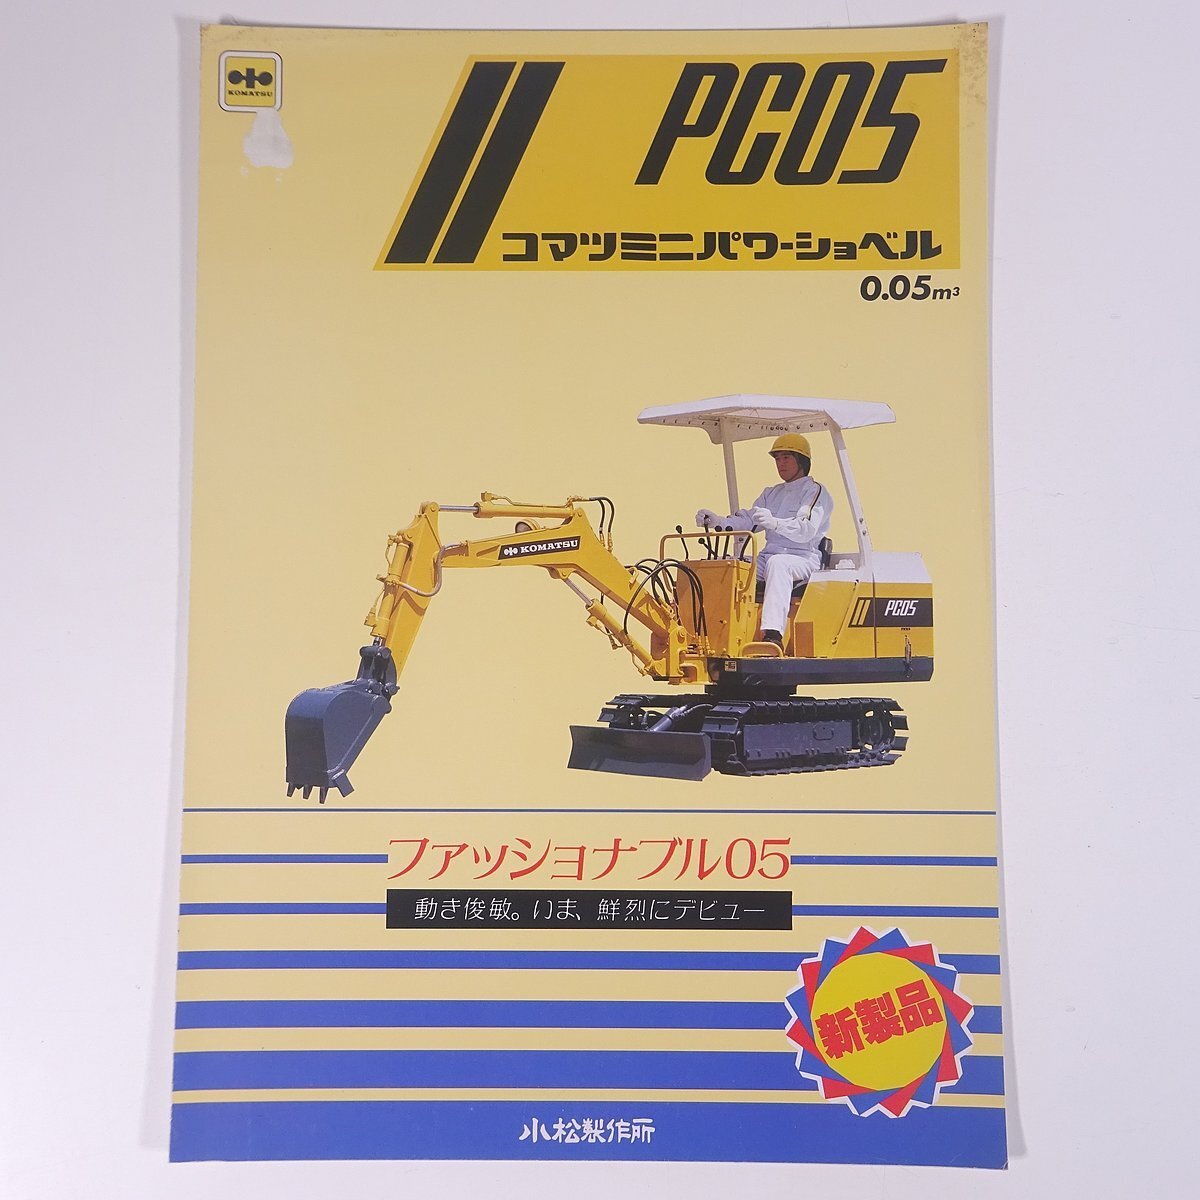 KOMATSU Komatsu PC05 Mini power shovel 0.05 Komatsu factory Showa era catalog pamphlet construction machinery 